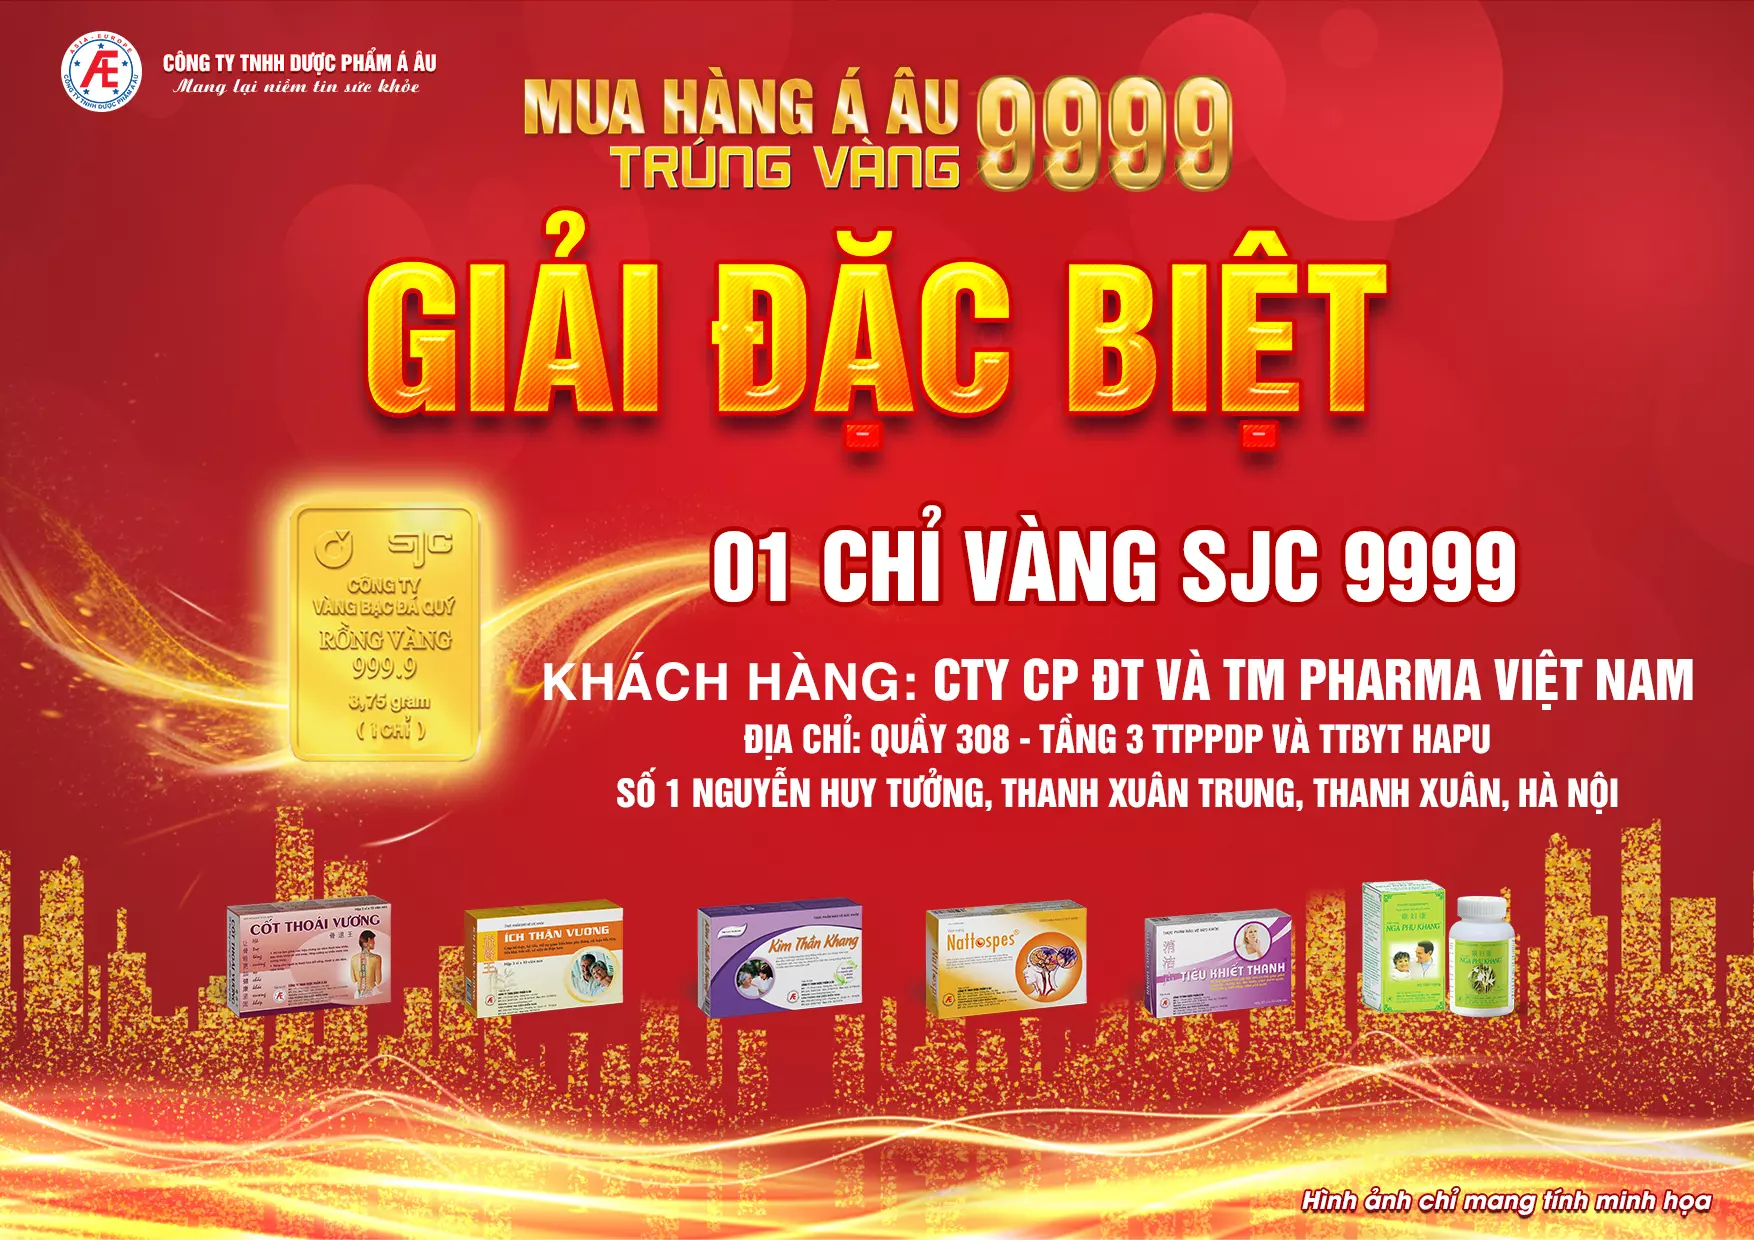 Cty CP ĐTư Và TMại Pharma Việt Nam